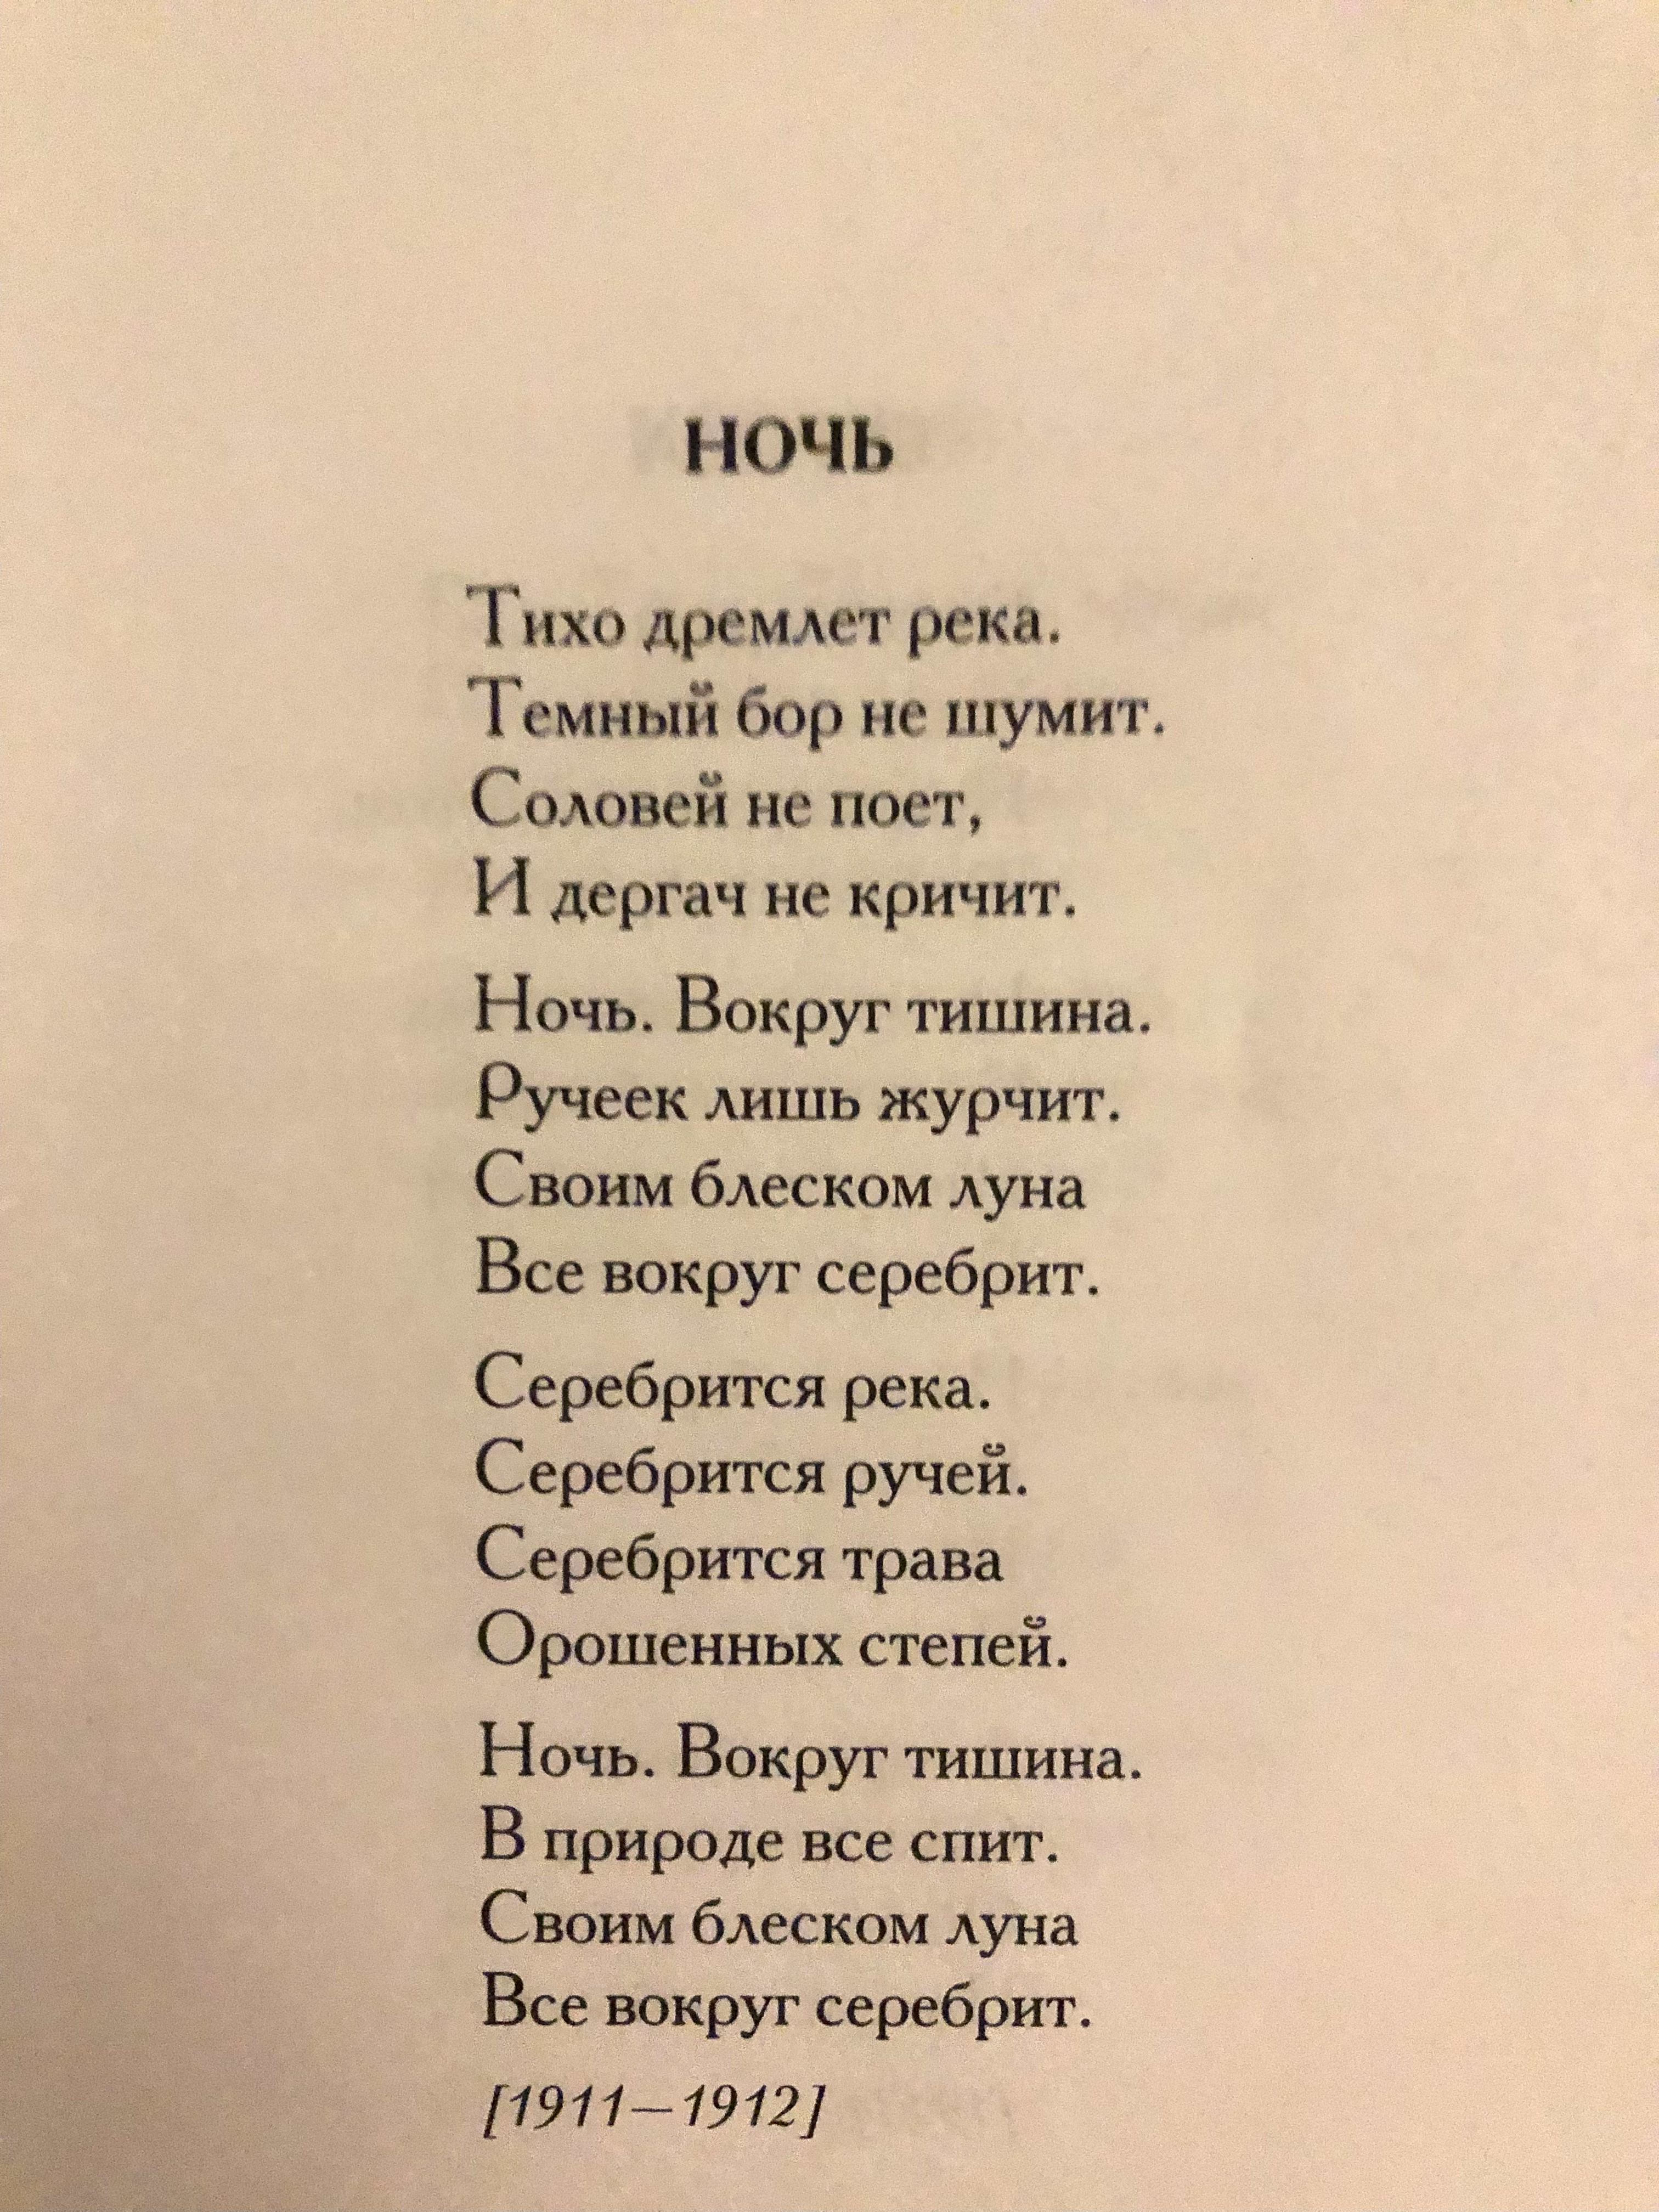 叶赛宁的短诗歌《夜》图片